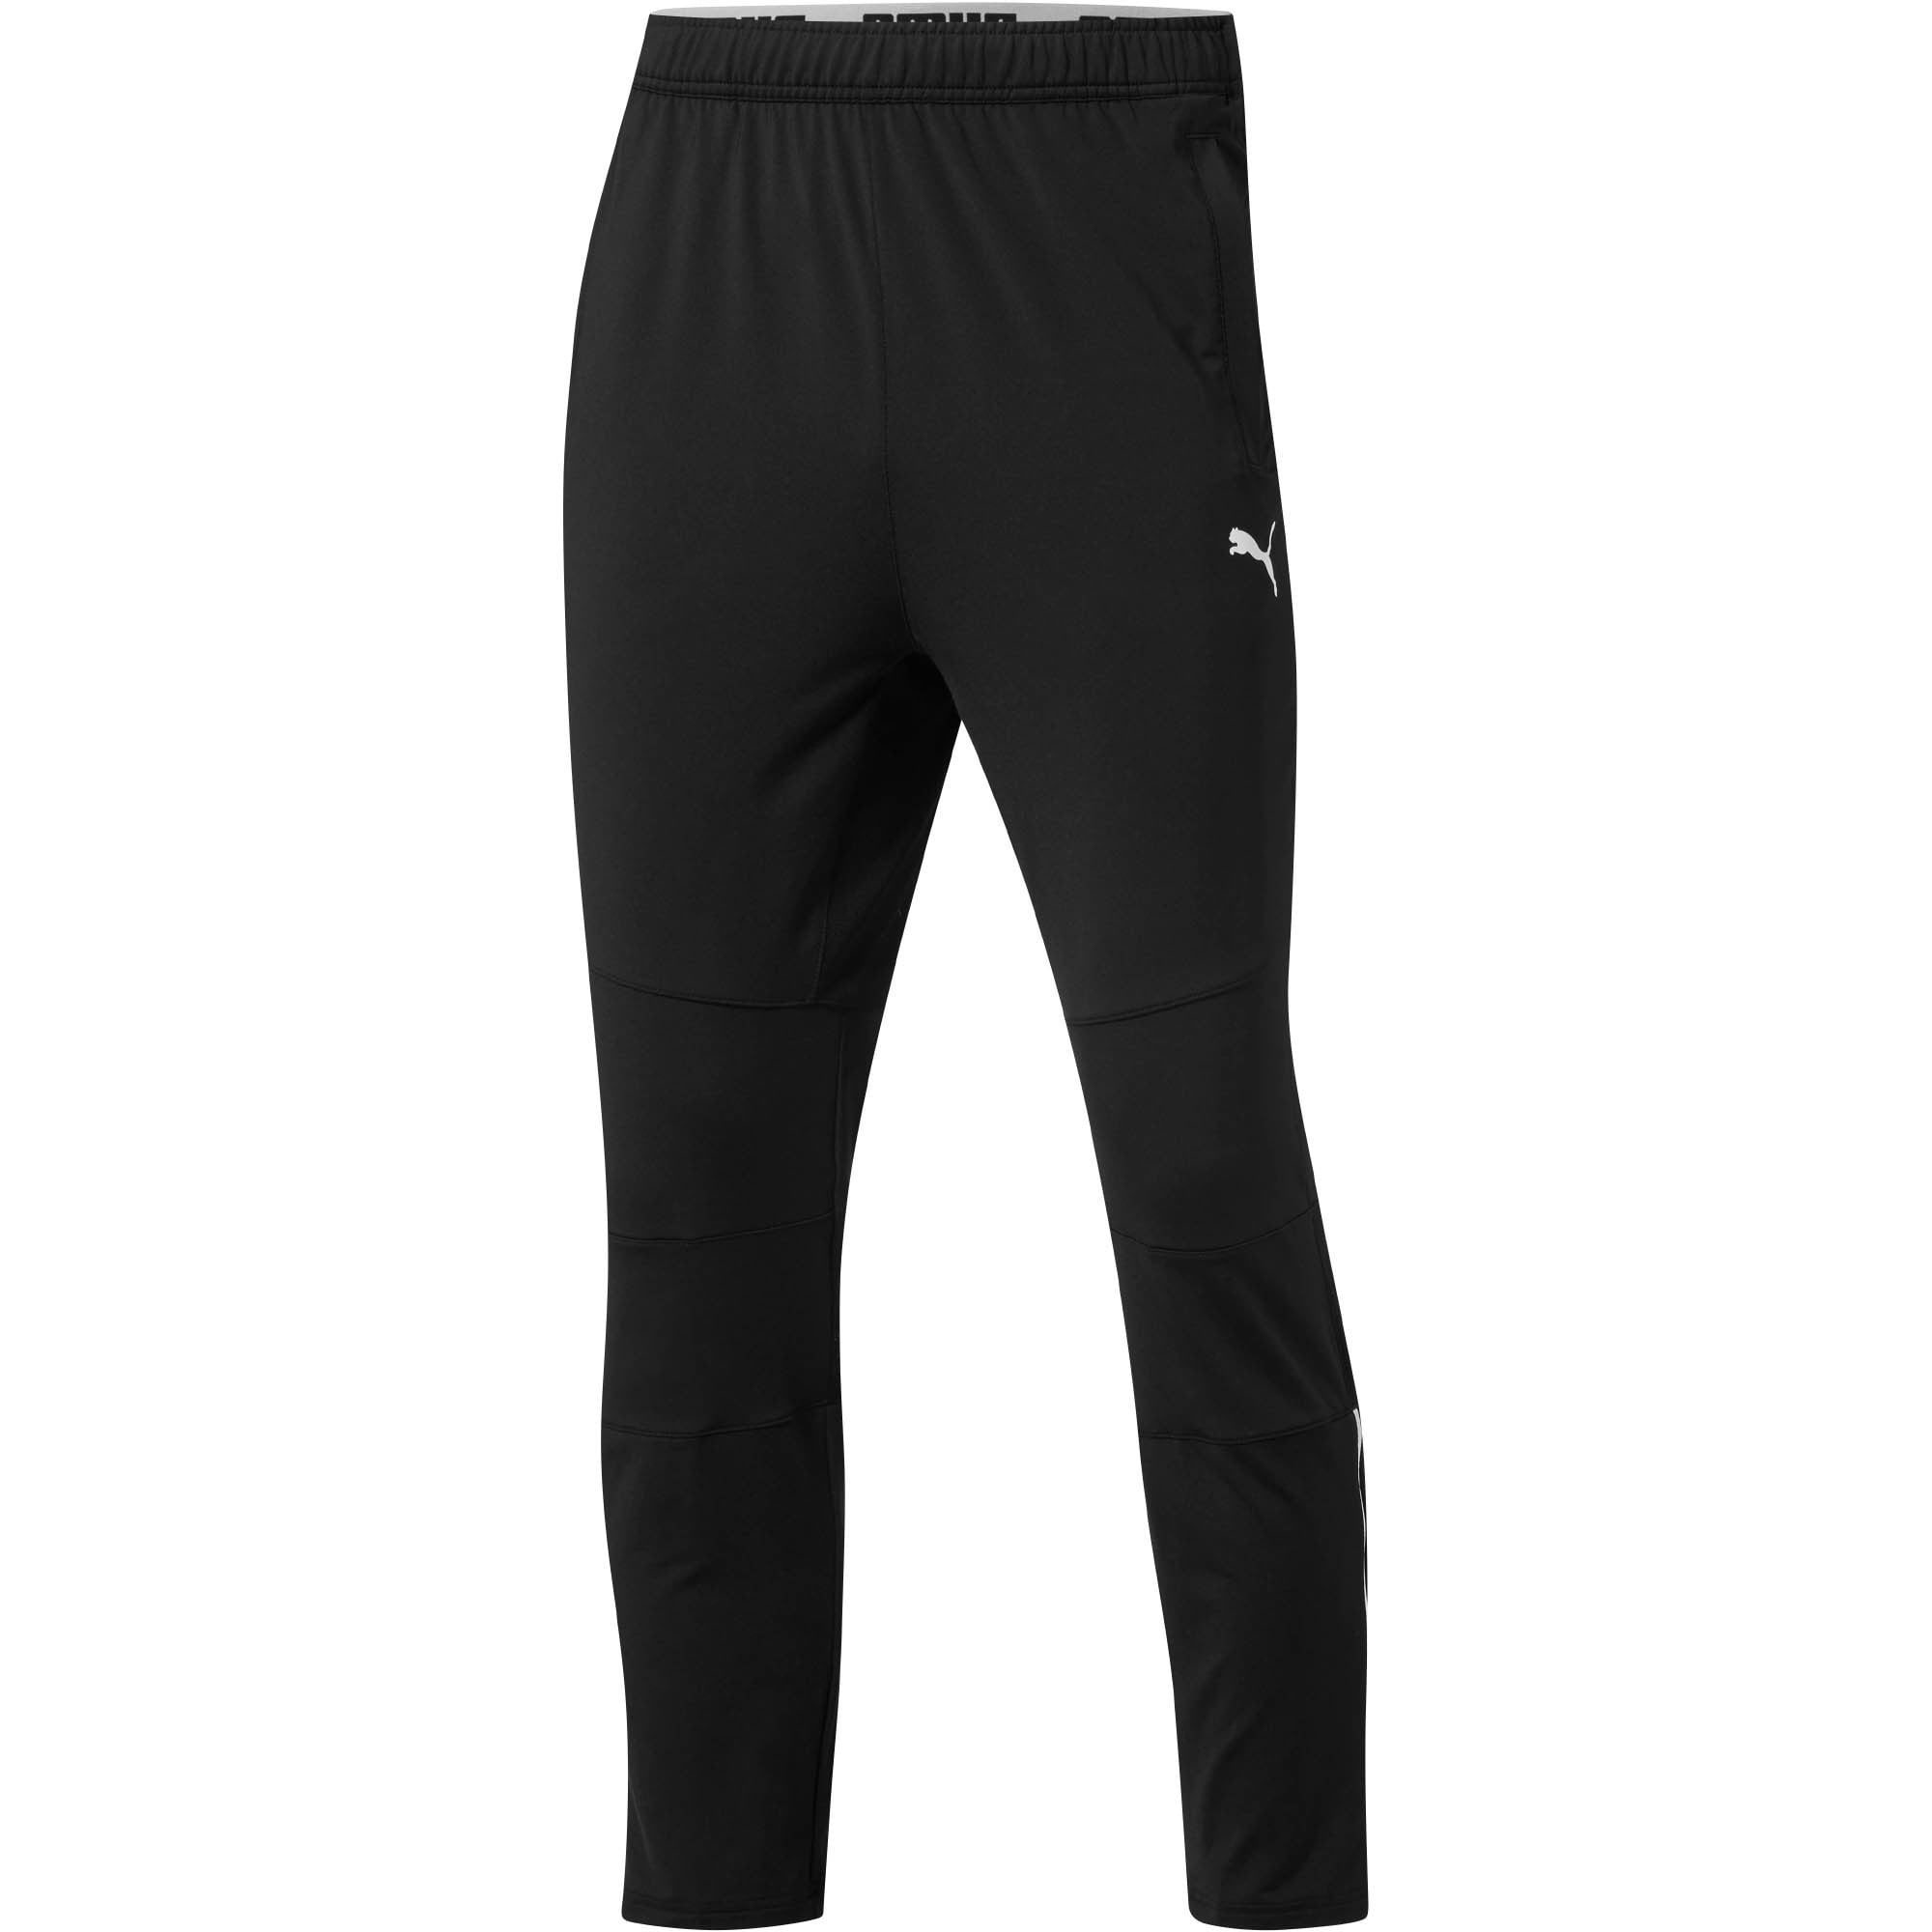 PUMA ftblNXT Soccer Pants Men - Walmart.com